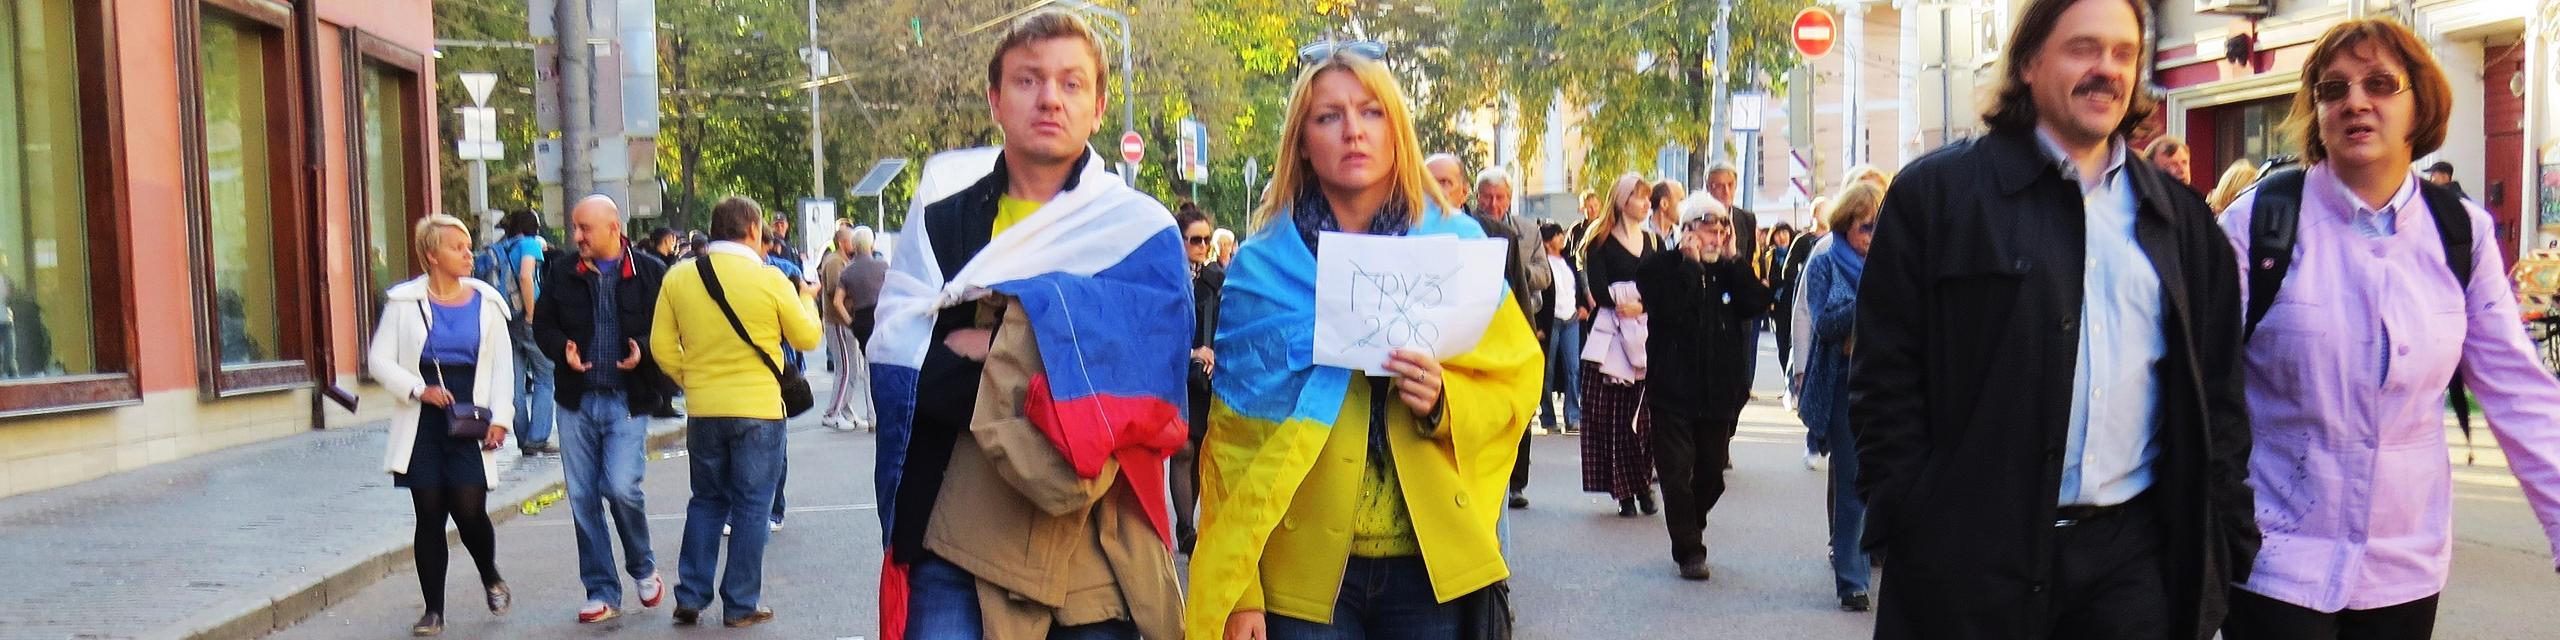 Twee mensen op een vredesbetoging in Moskou, 2014.